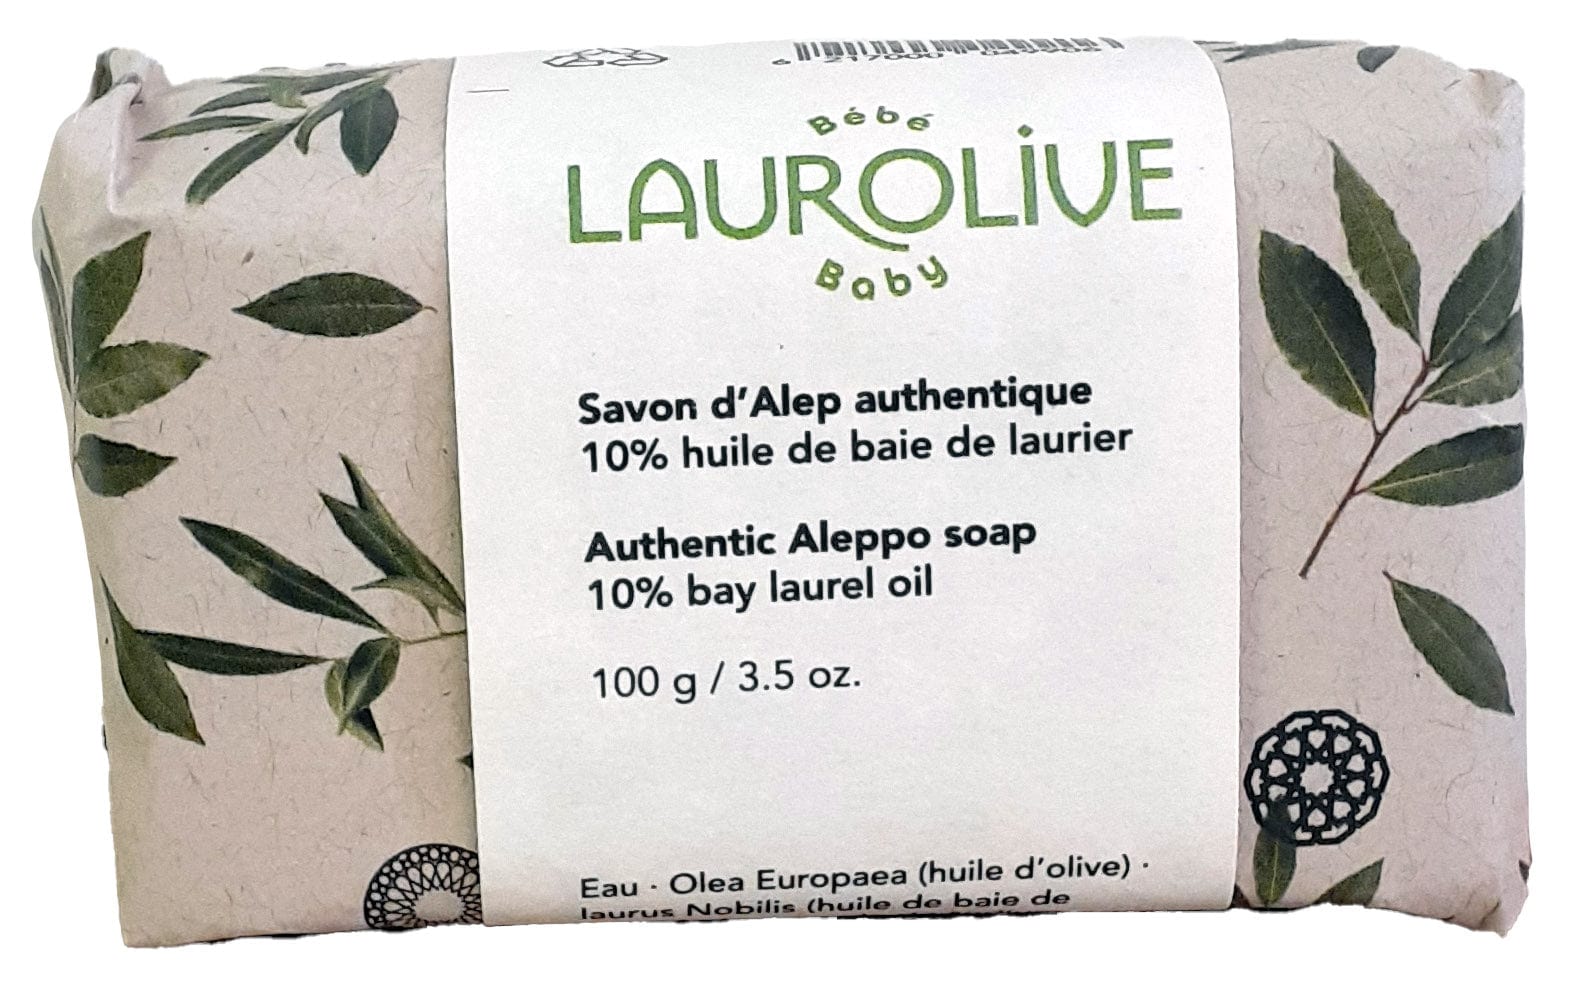 ADECO IMPORT-EXPORT Soins & beauté Savon d'Alep 10% de baie de laurier (pour bébé) 100g